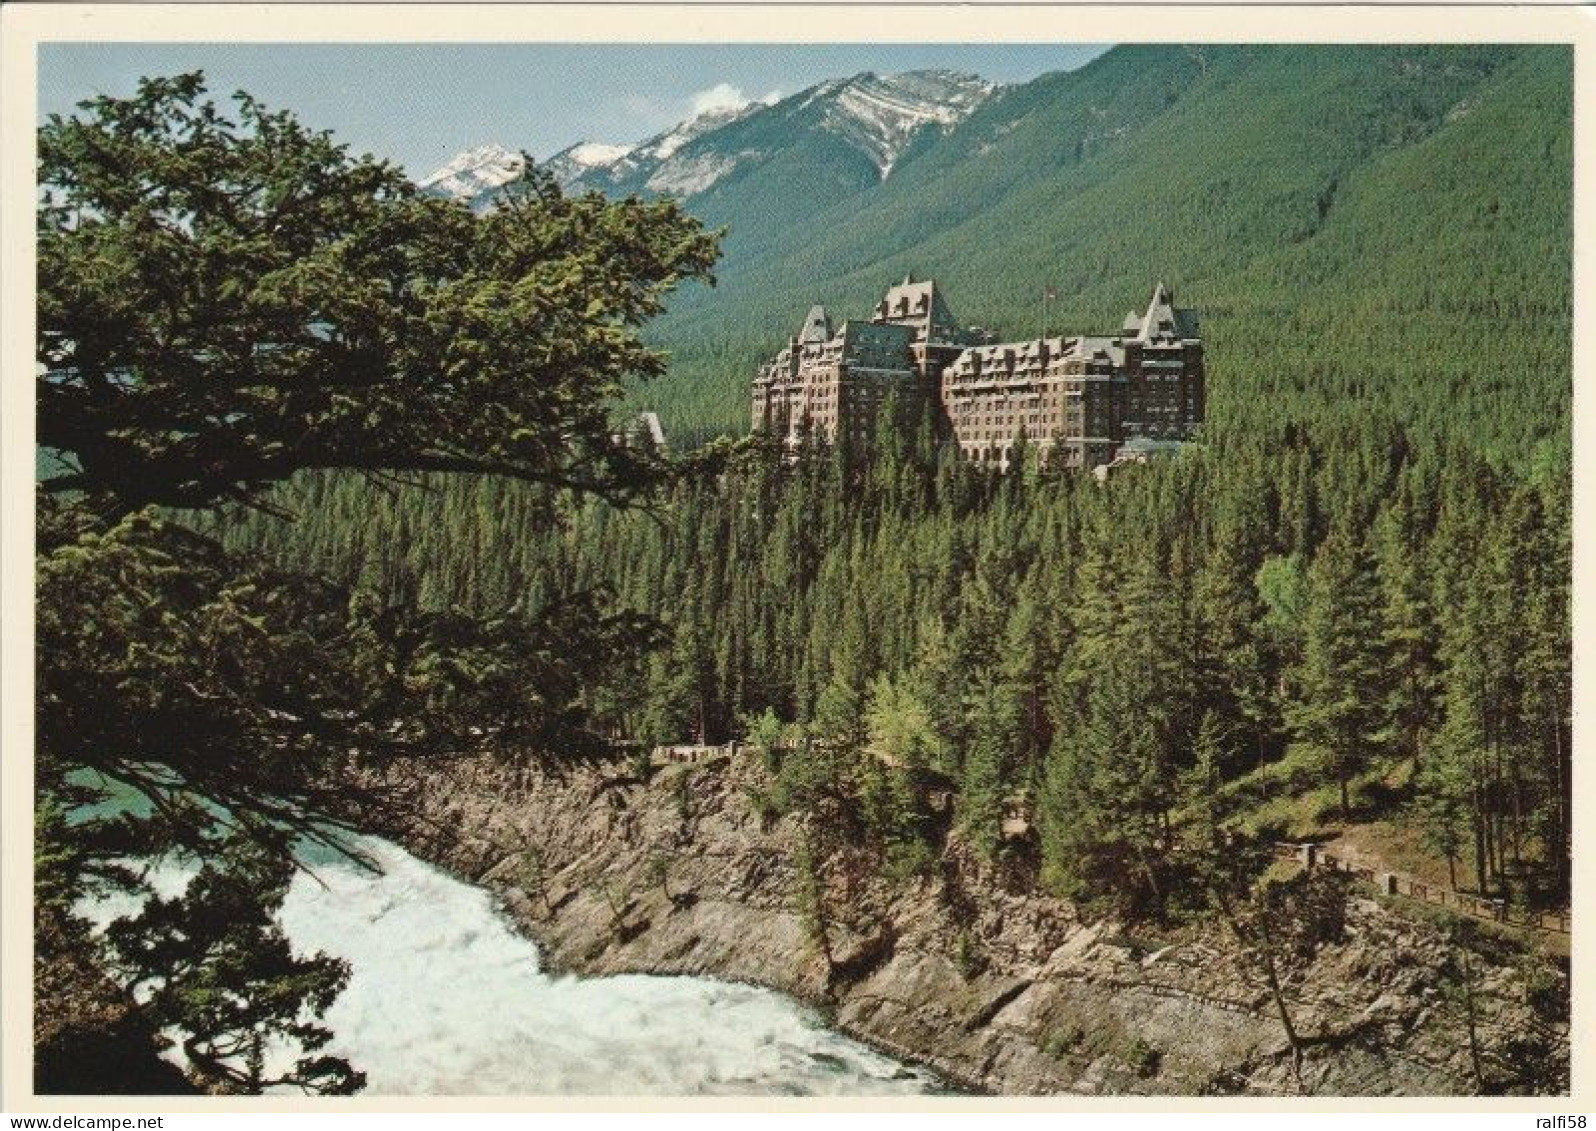 1 AK Kanada / Alberta * Banff Springs Hotel Im Banff National Park * - Banff